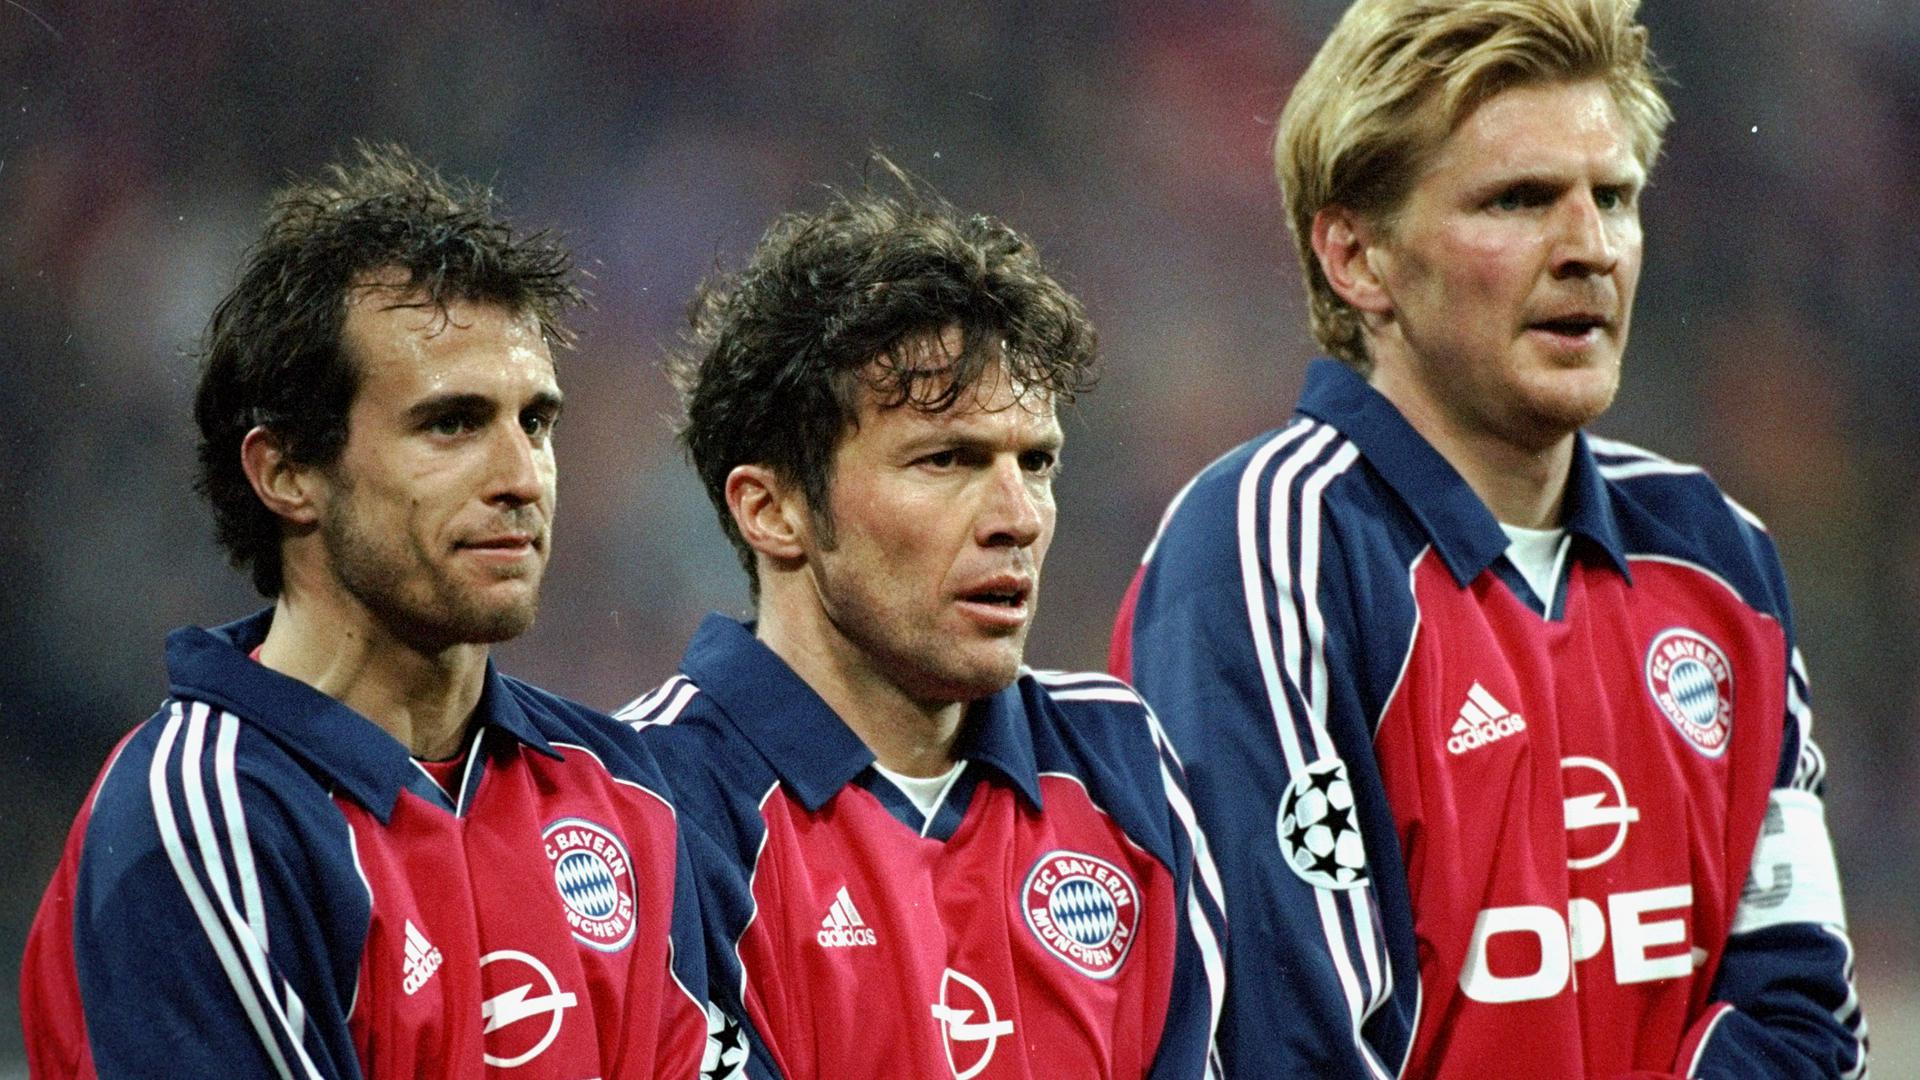 Bayern Munich legends Lothar Matthaus and Stefan Effenberg discuss the Treble Reunion game